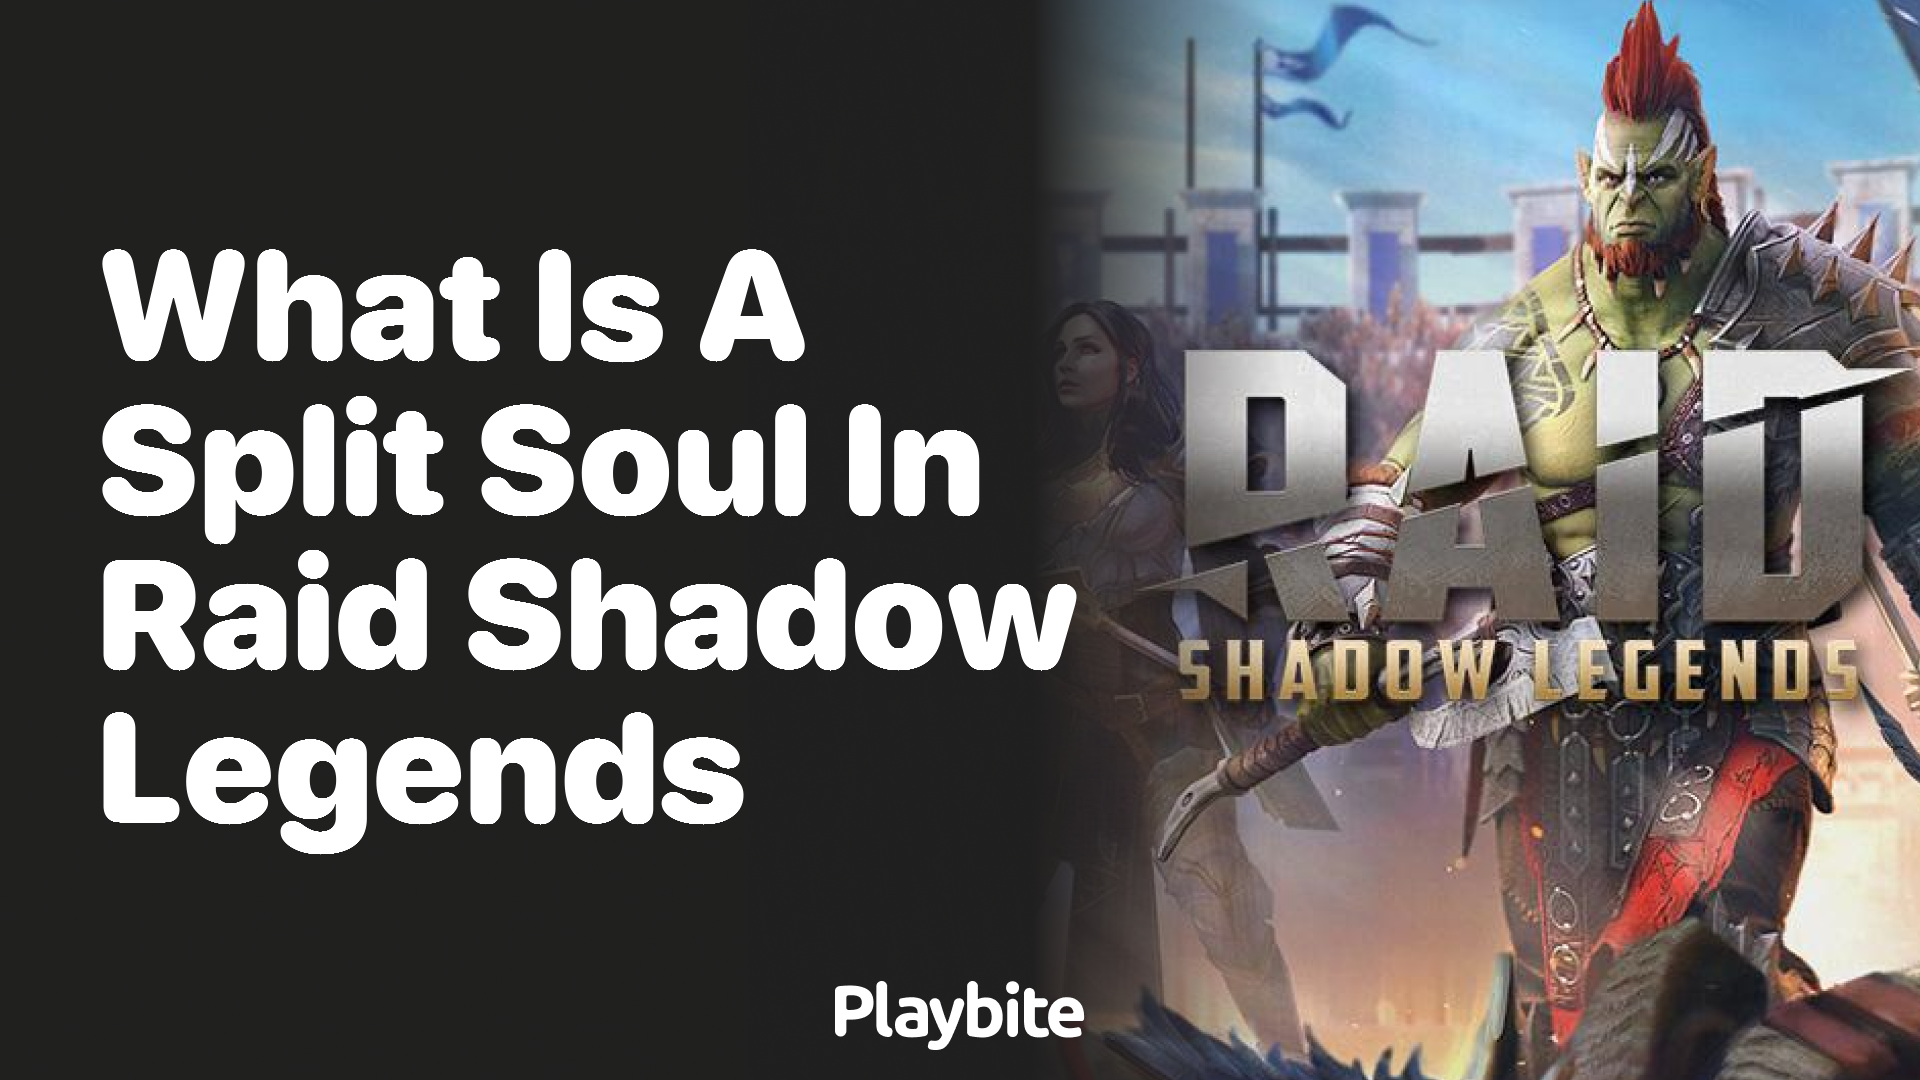 What Is a Split Soul in Raid Shadow Legends?